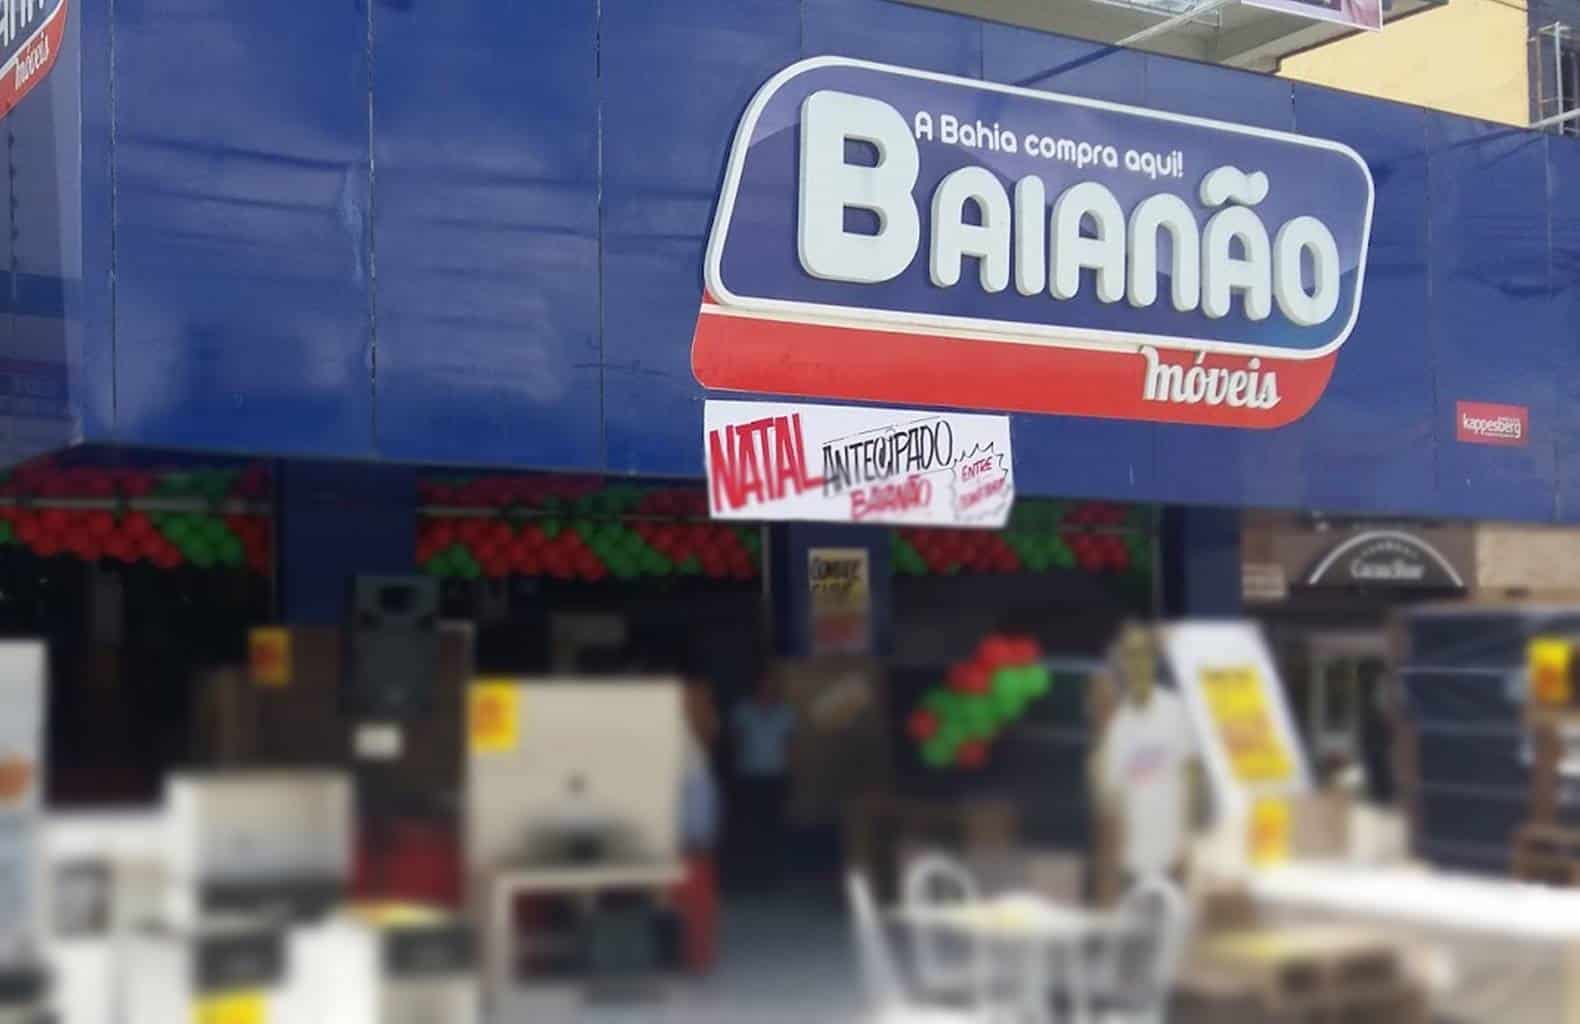 Baianão Móveis vai inaugurar nova loja no Centro de Simões Filho nesta quinta-feira; veja vídeo com ofertas